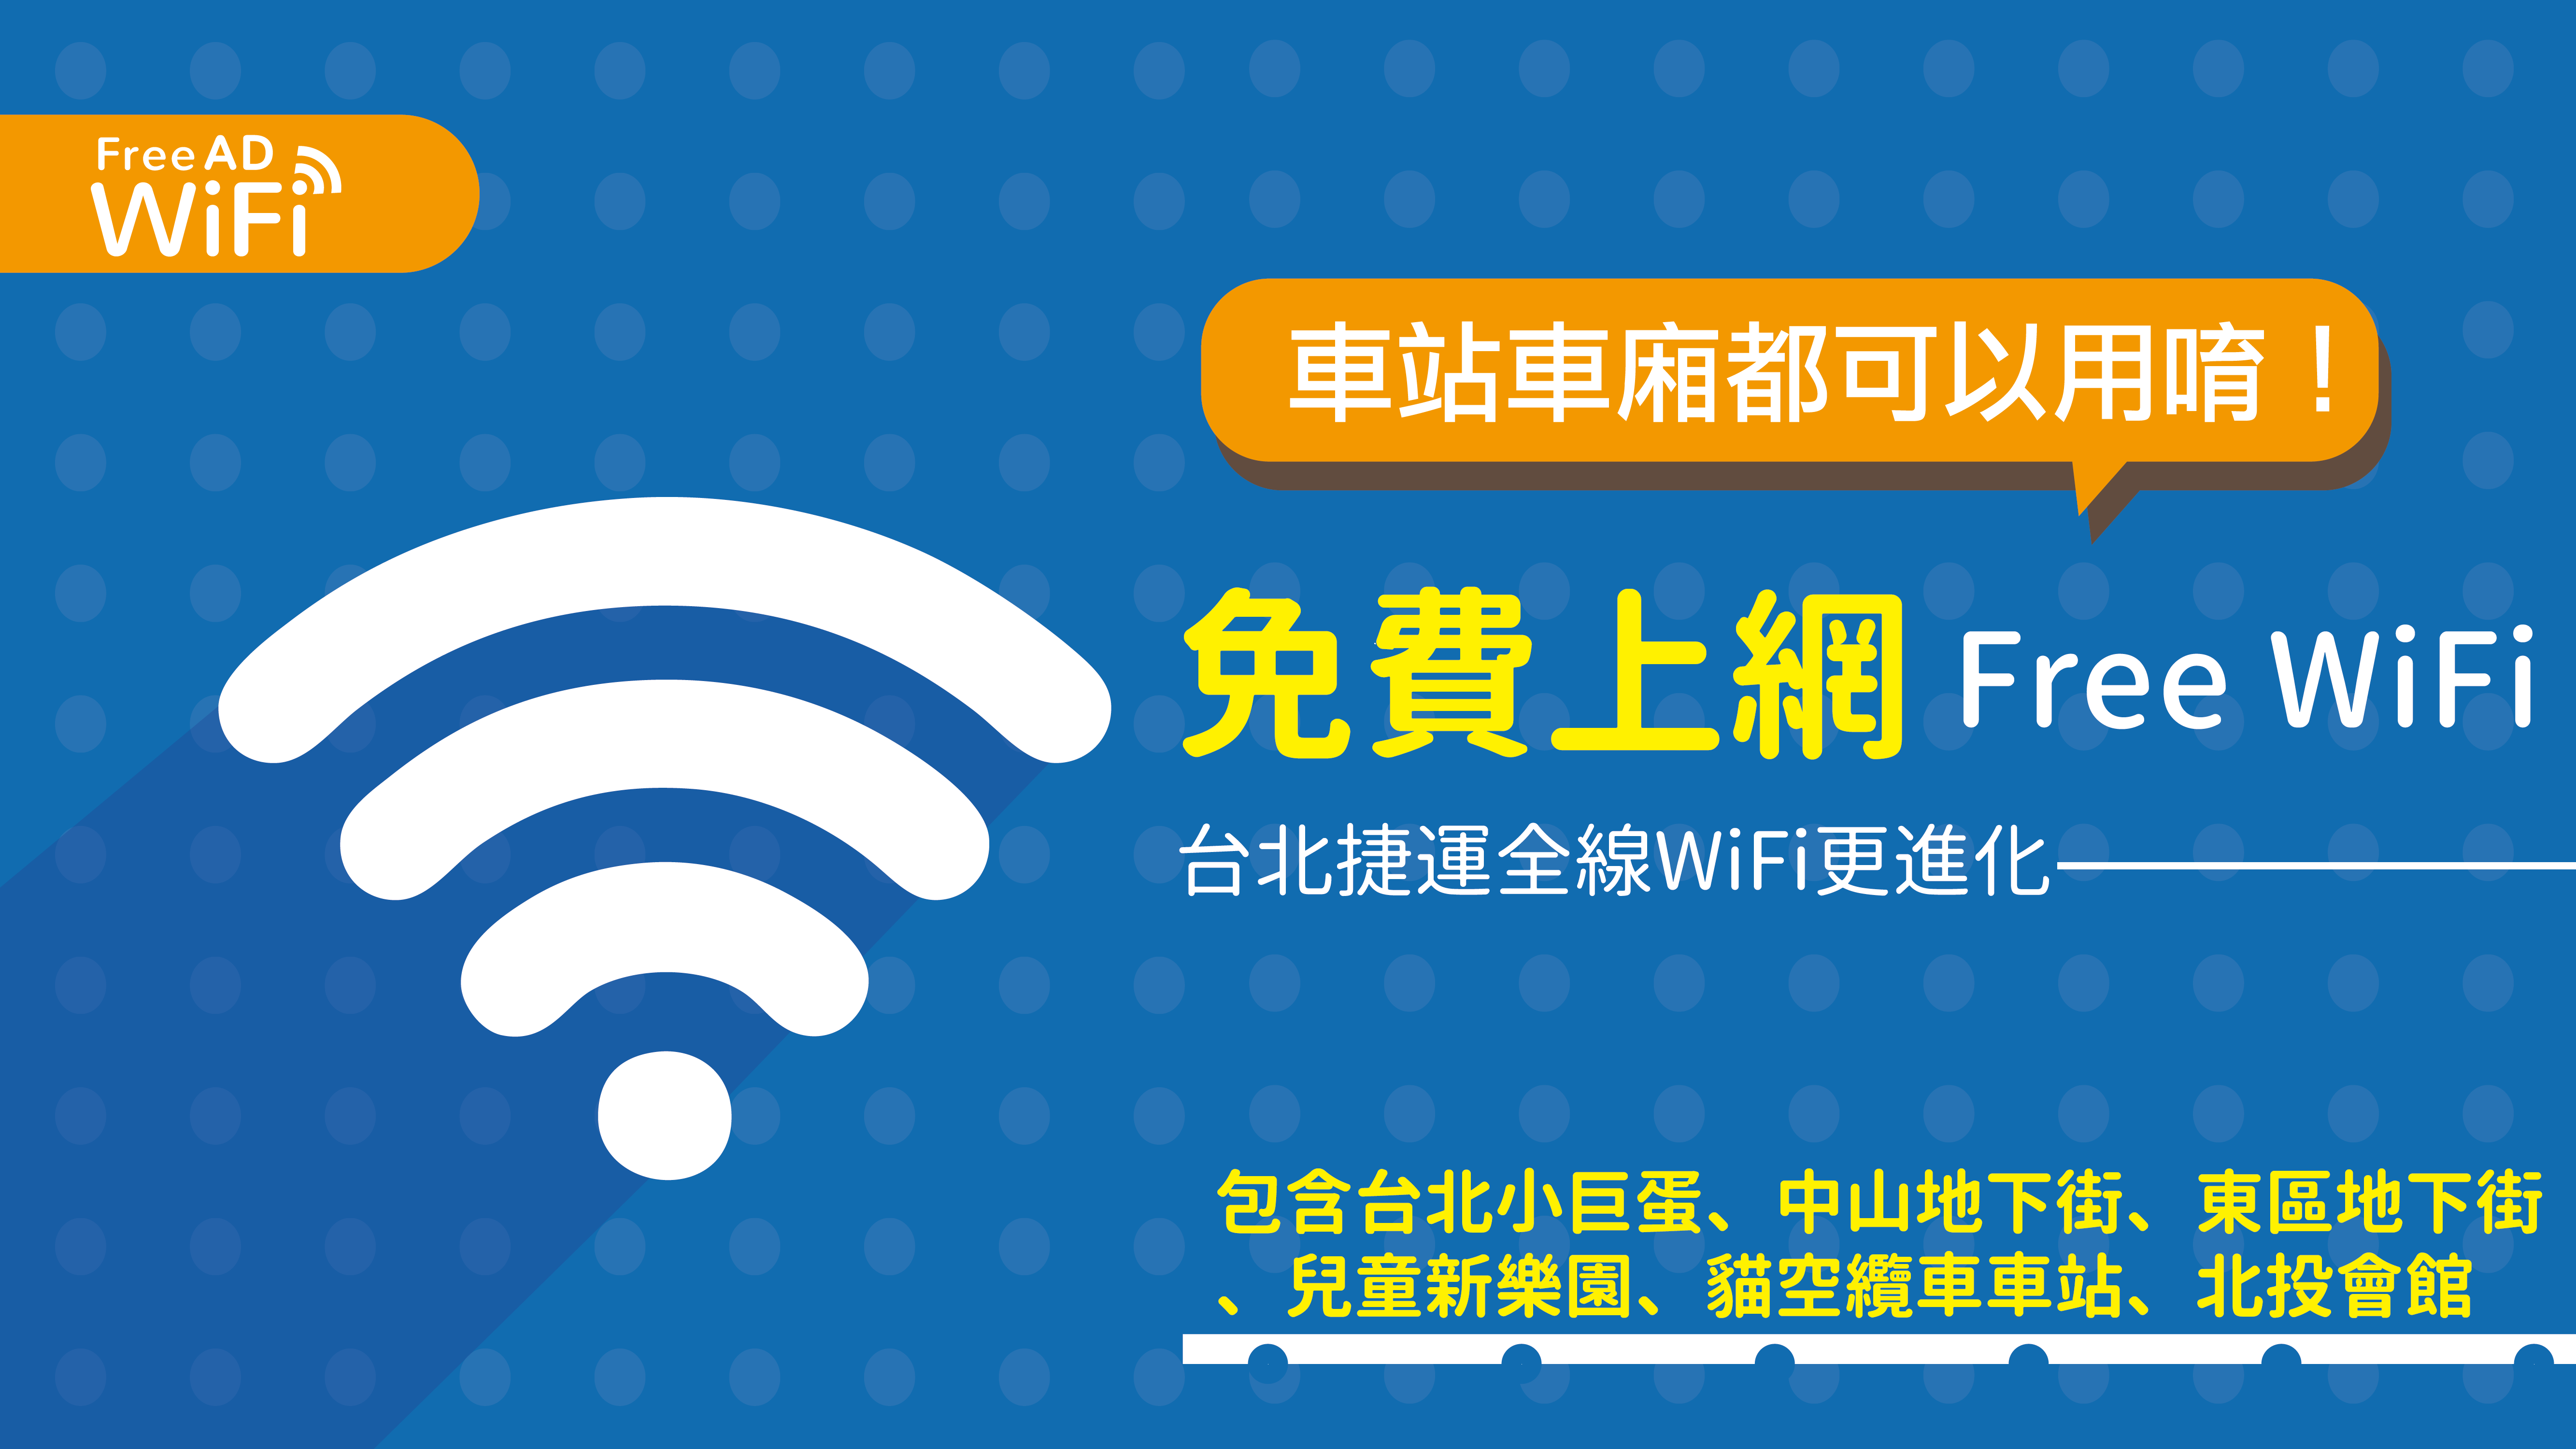 臺北捷運免費WiFi「 .TPE-Free AD WiFi  」自25日起停止服務